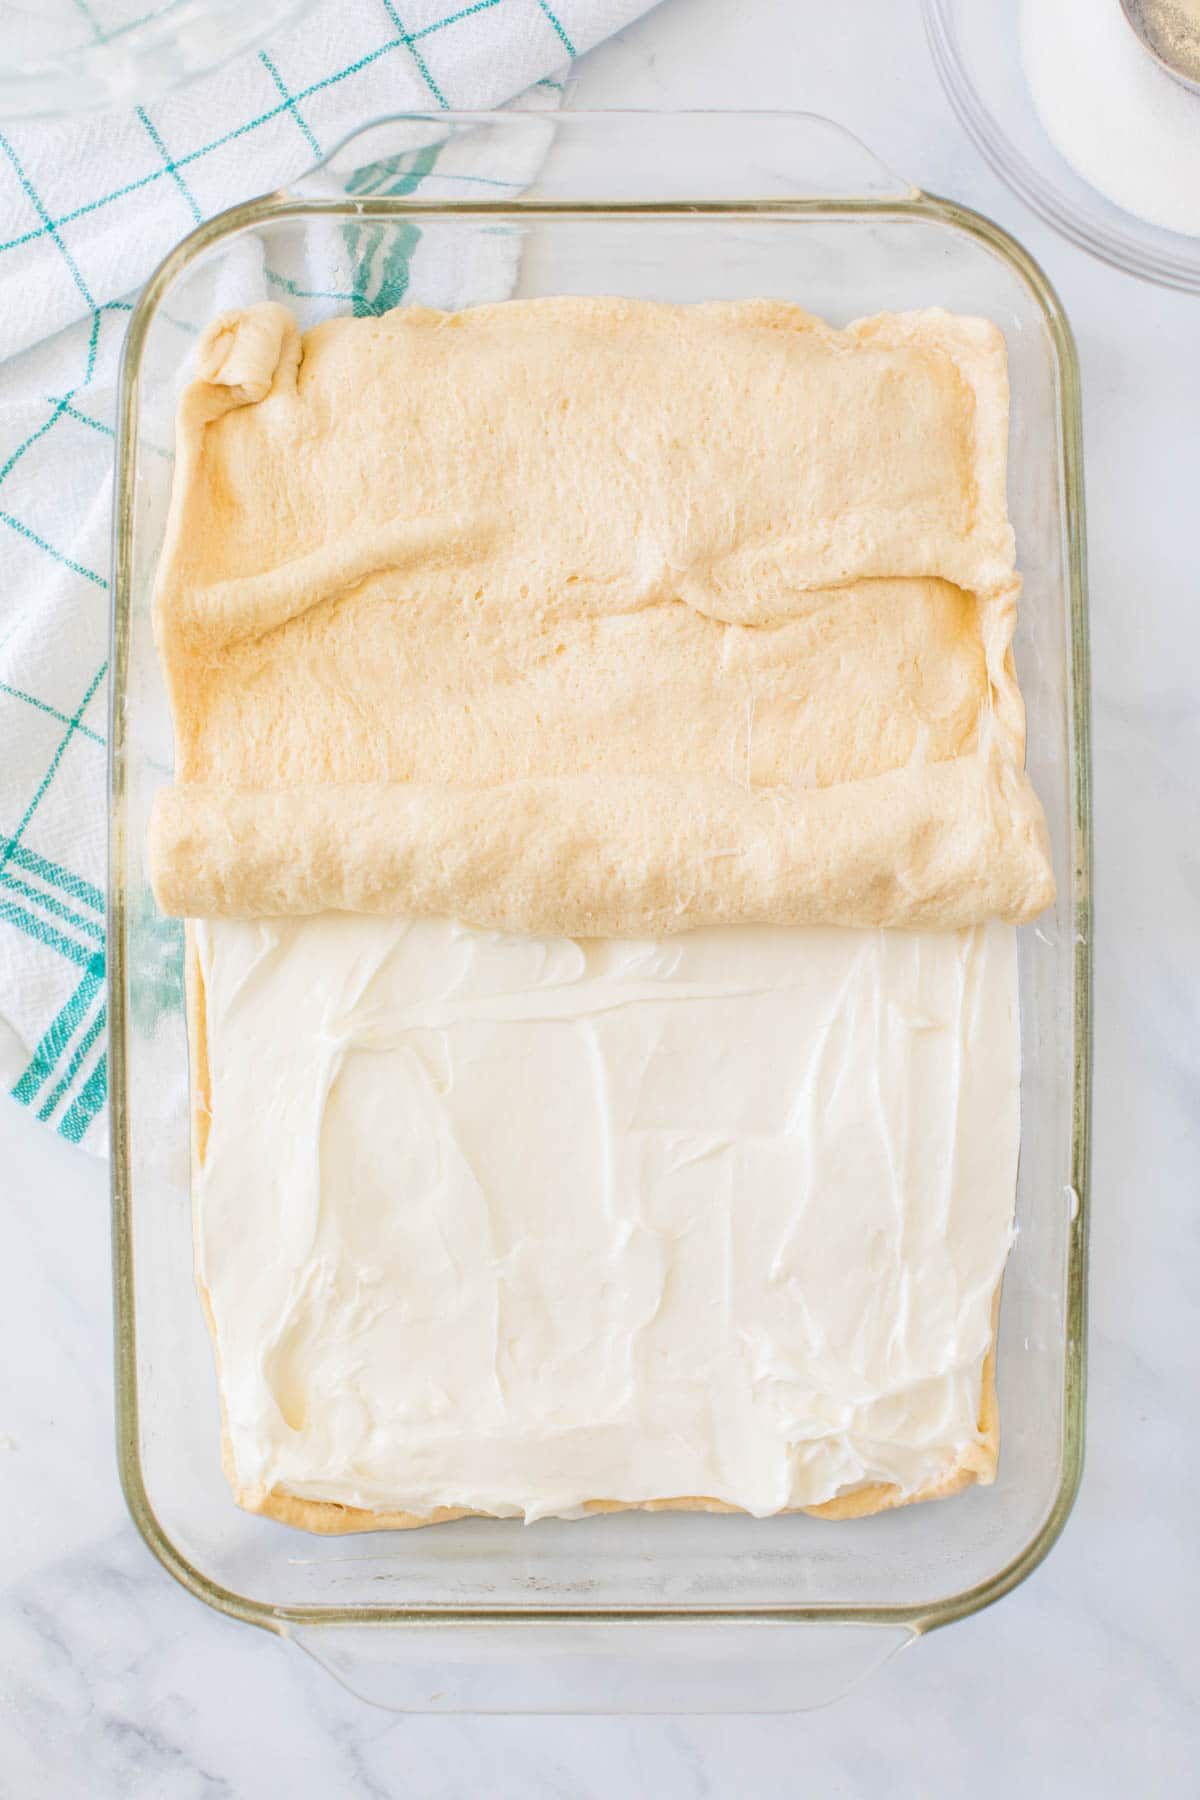 Rouleau de croissant posé sur le dessus du fromage à la crème dans un plat allant au four